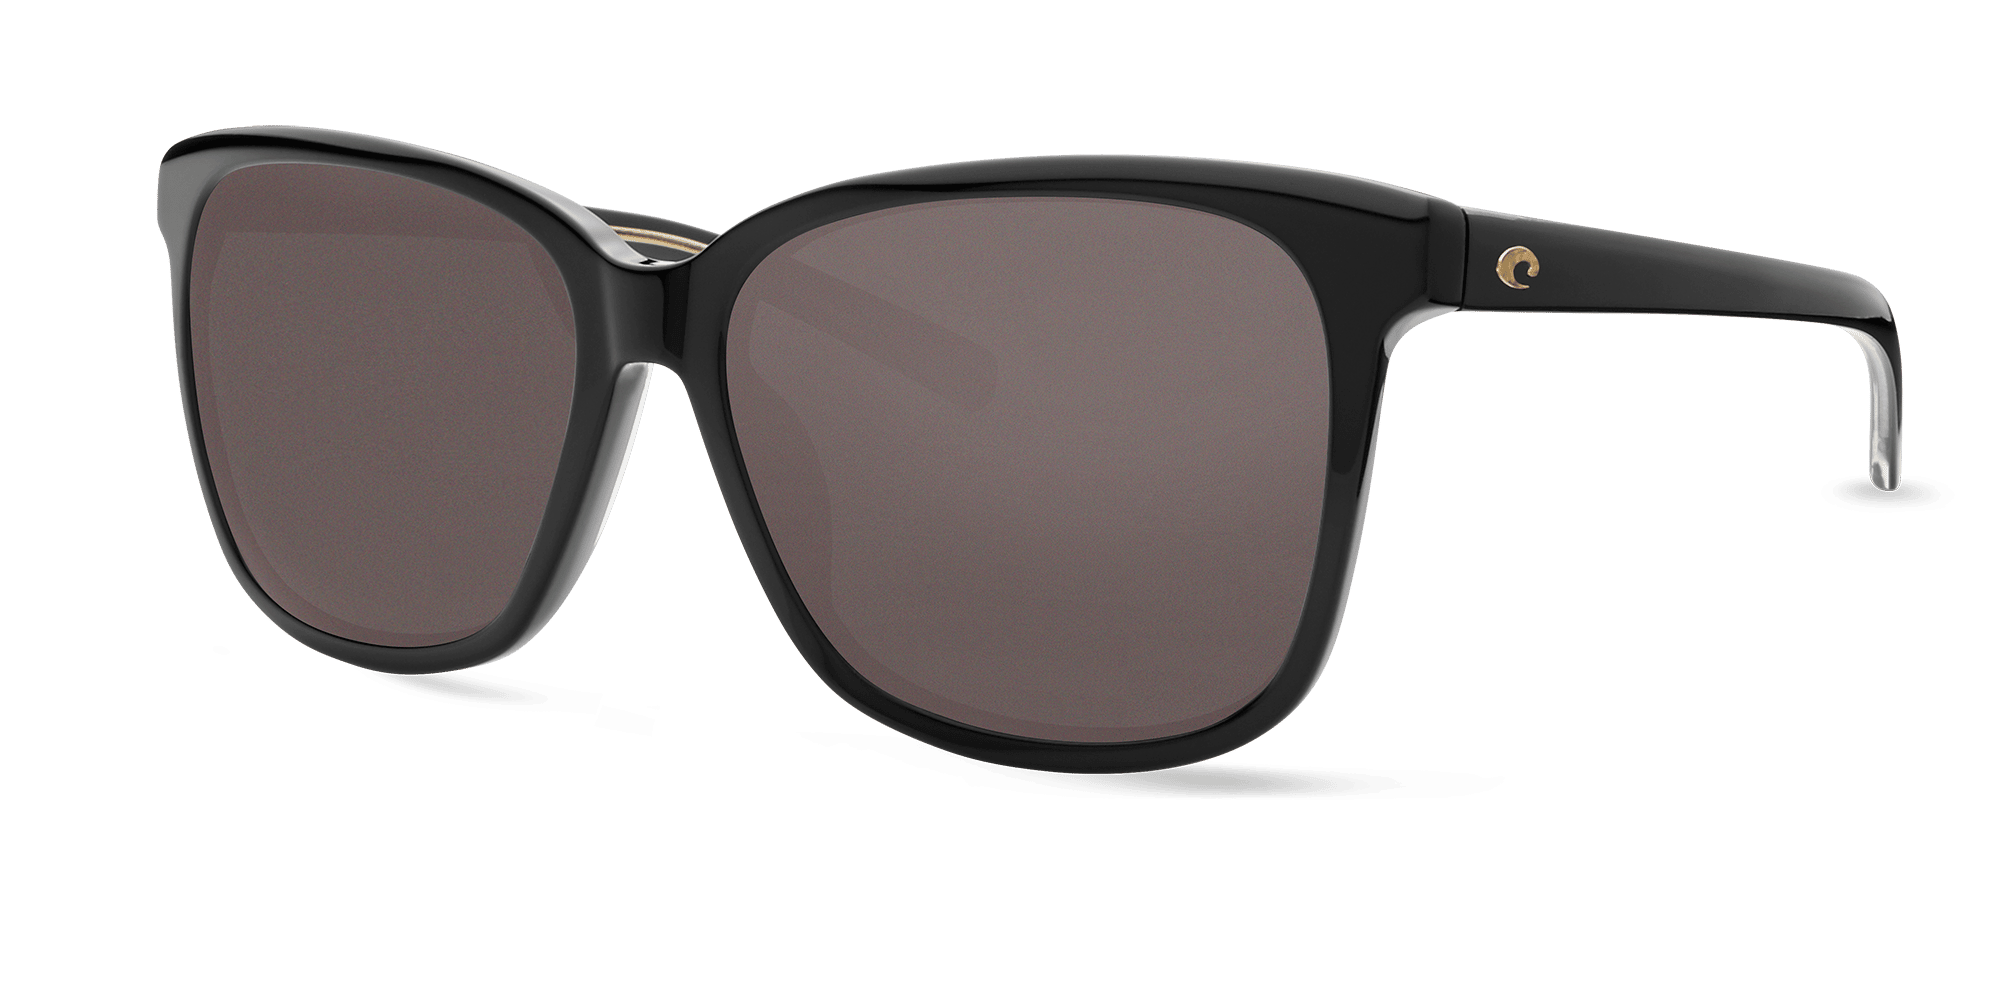 May Sunglasses may11-shiny-black-gray-lens-angle2.png